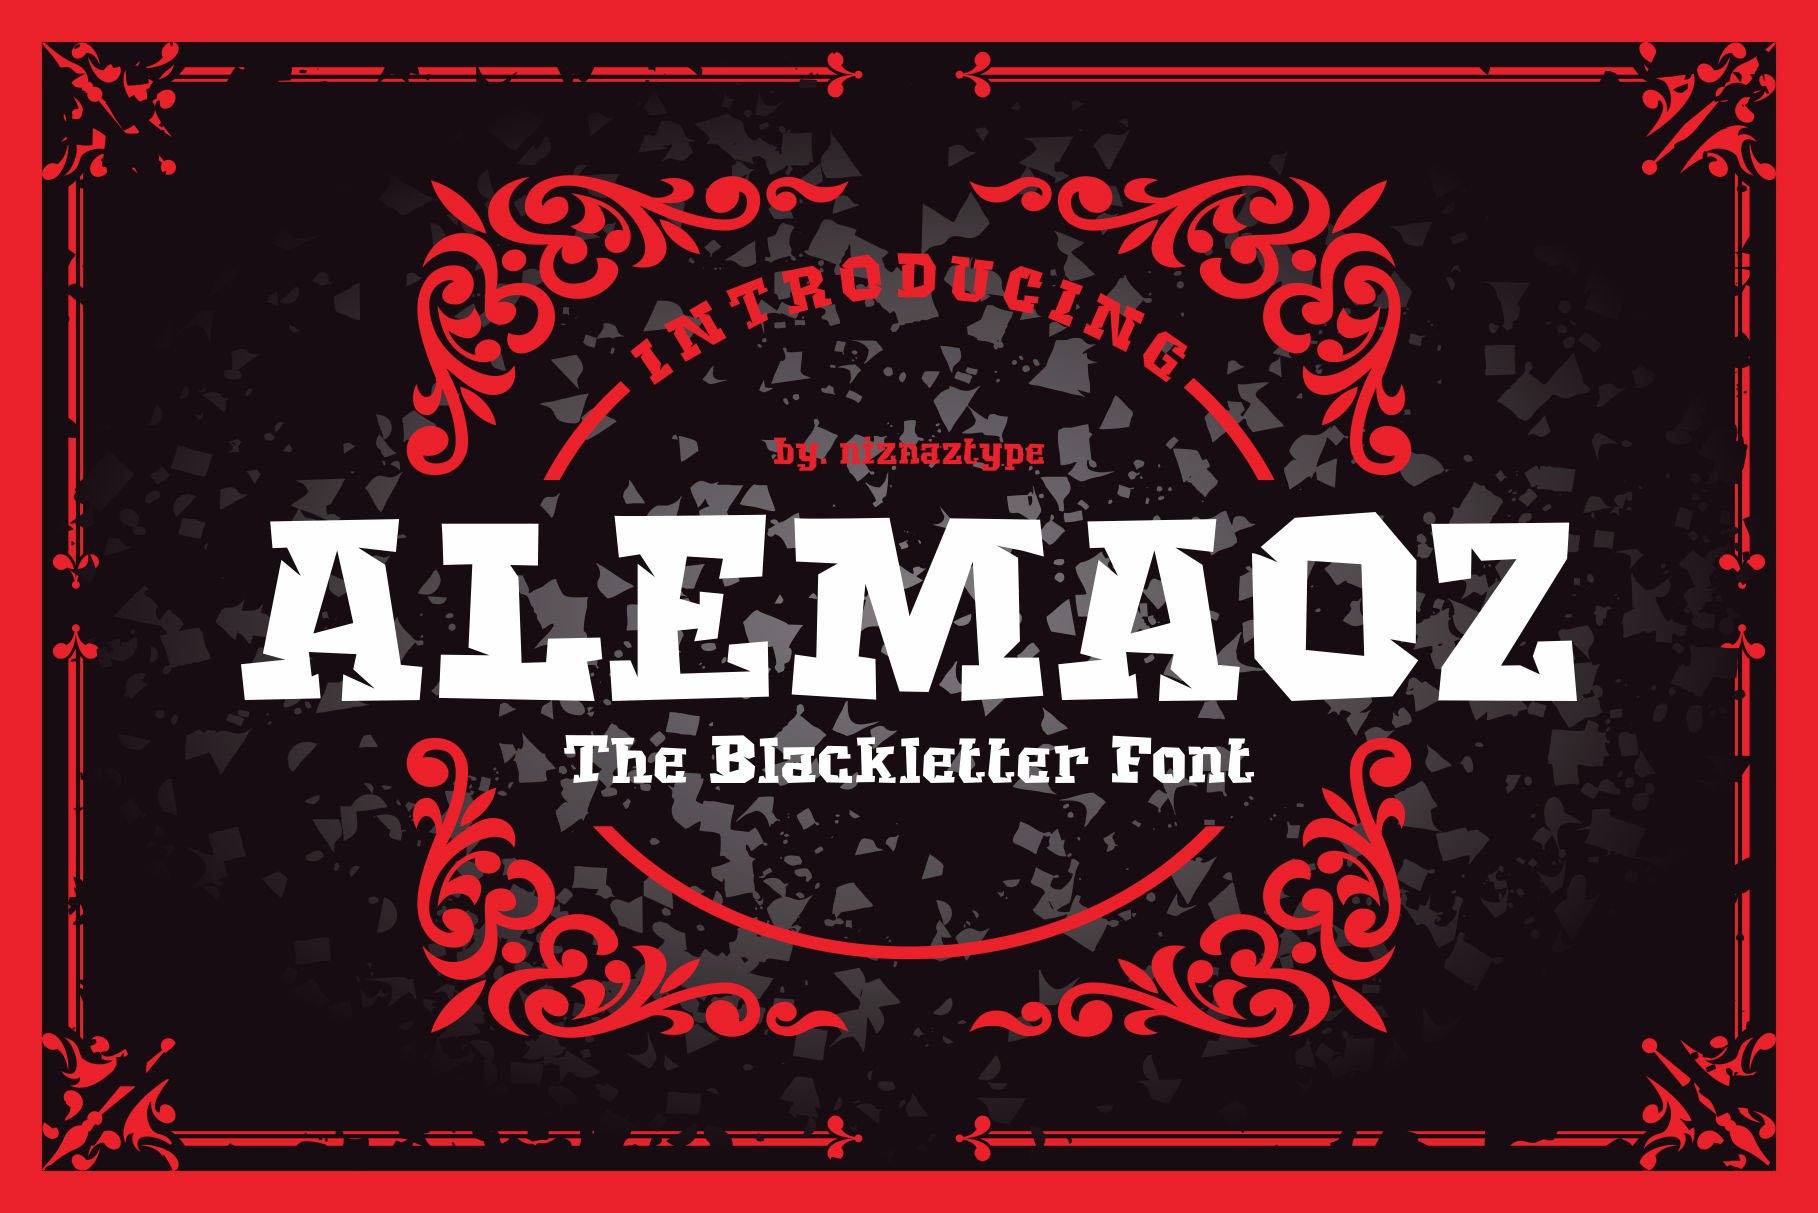 Alemaoz Font - A Blackletter Font cover image.